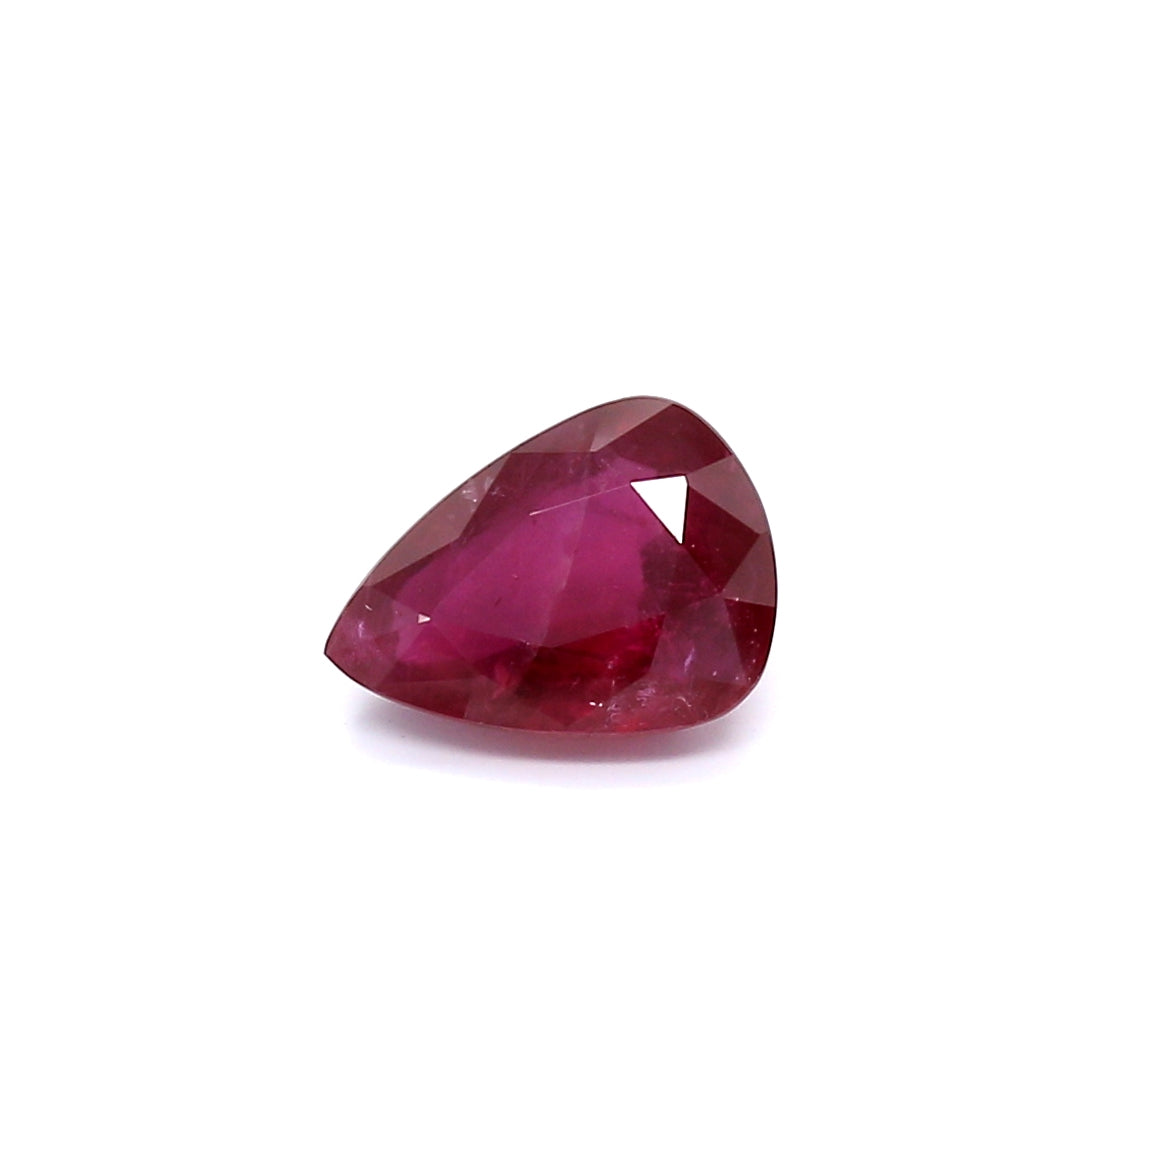 1.30ct Pear Shape Ruby, H(a), Thailand - 8.08 x 5.89 x 3.38mm